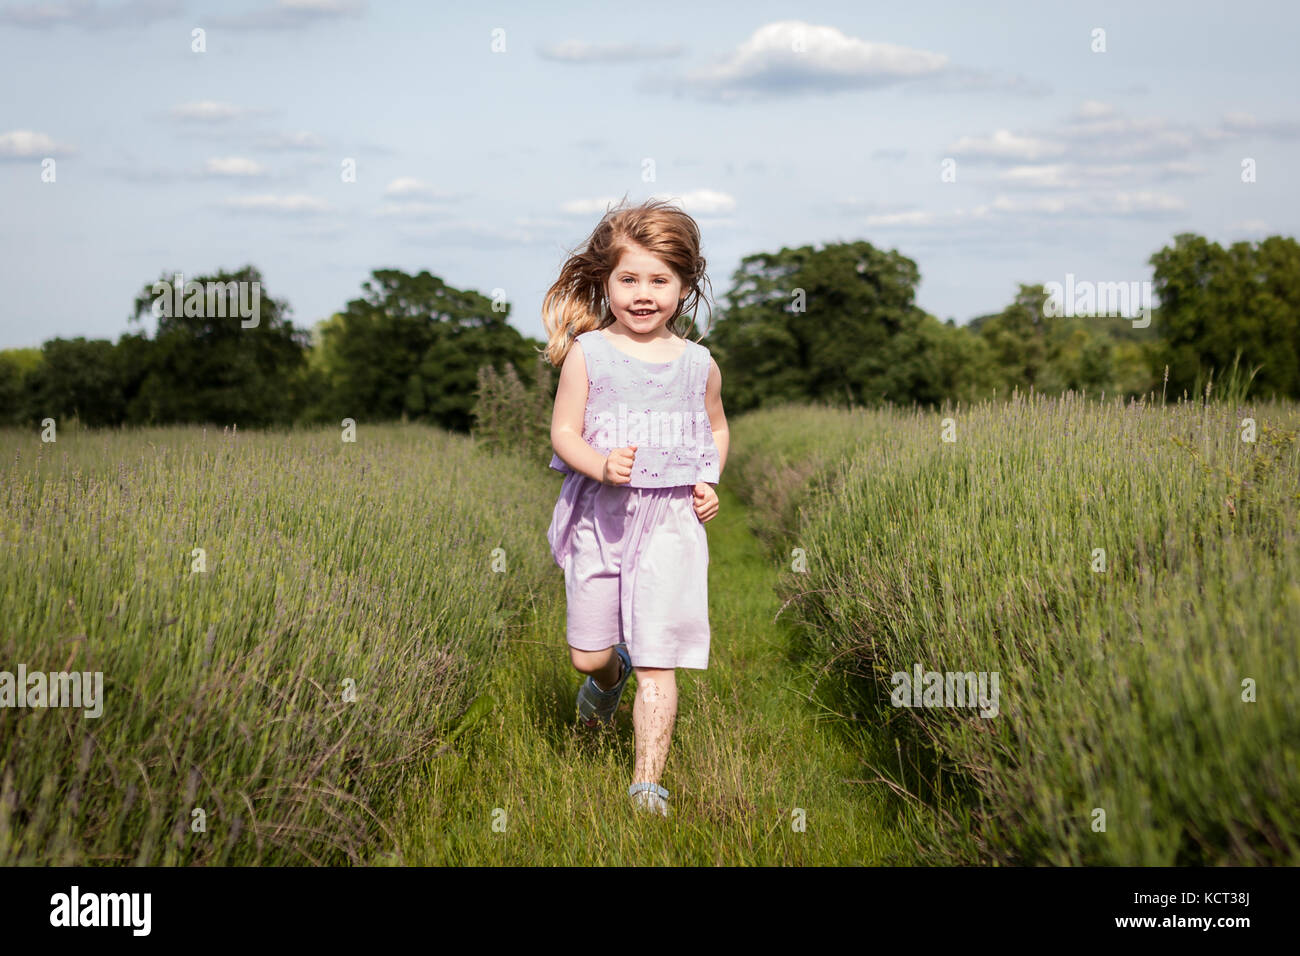 Little girl running through field Banque D'Images